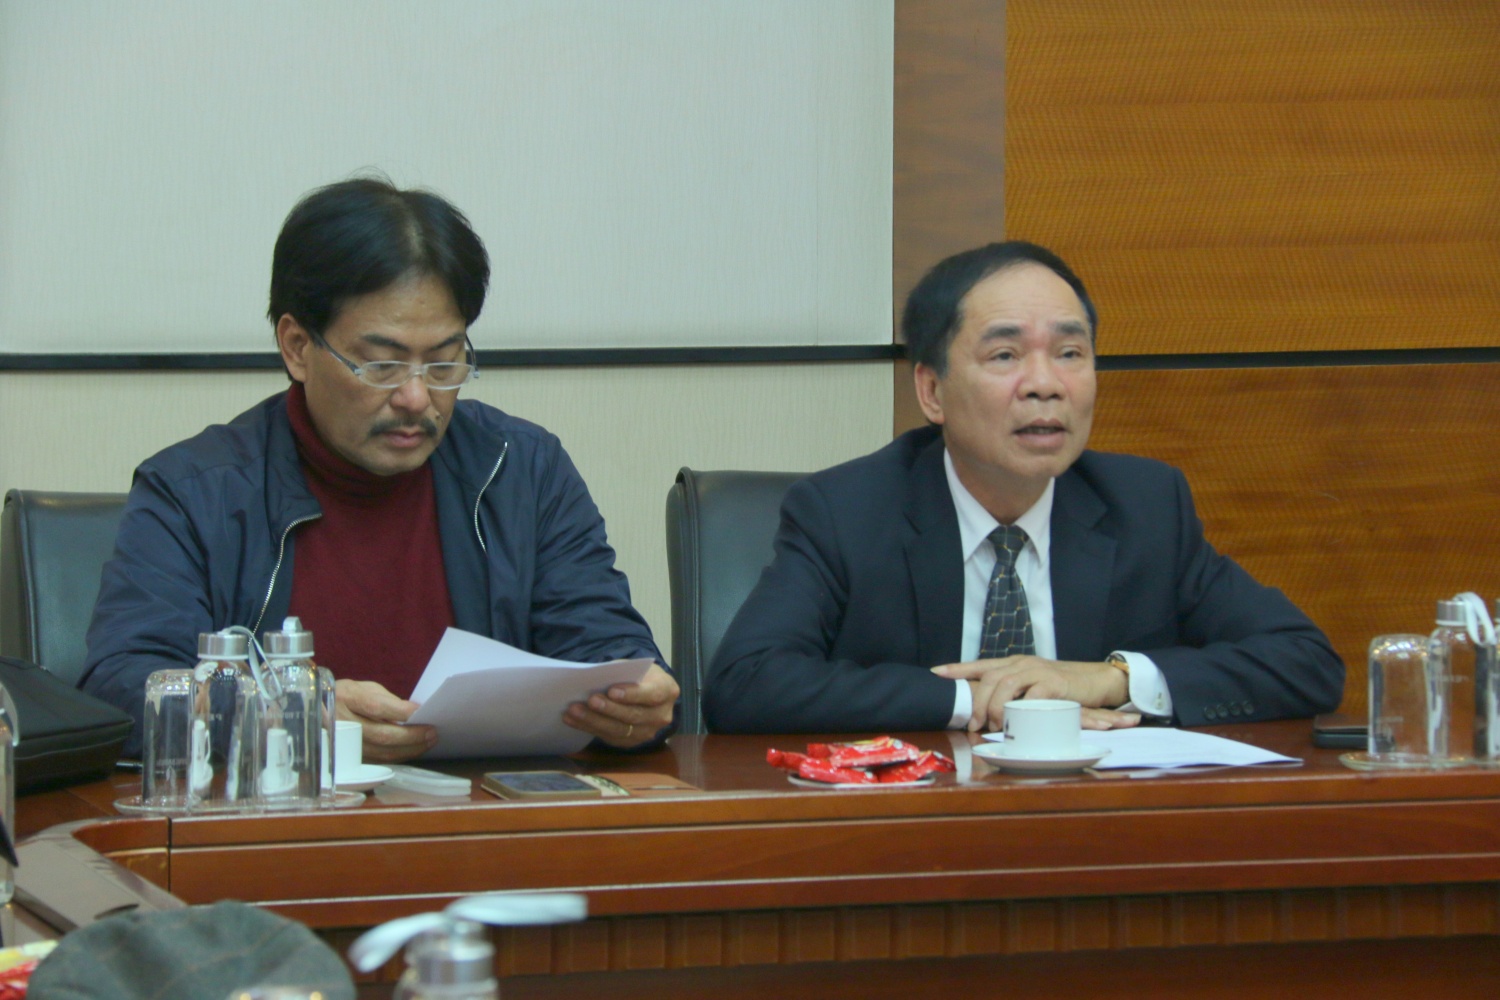 Hội Dầu khí Việt Nam tổ chức Hội nghị thường trực mở rộng lần thứ 12, khóa IV